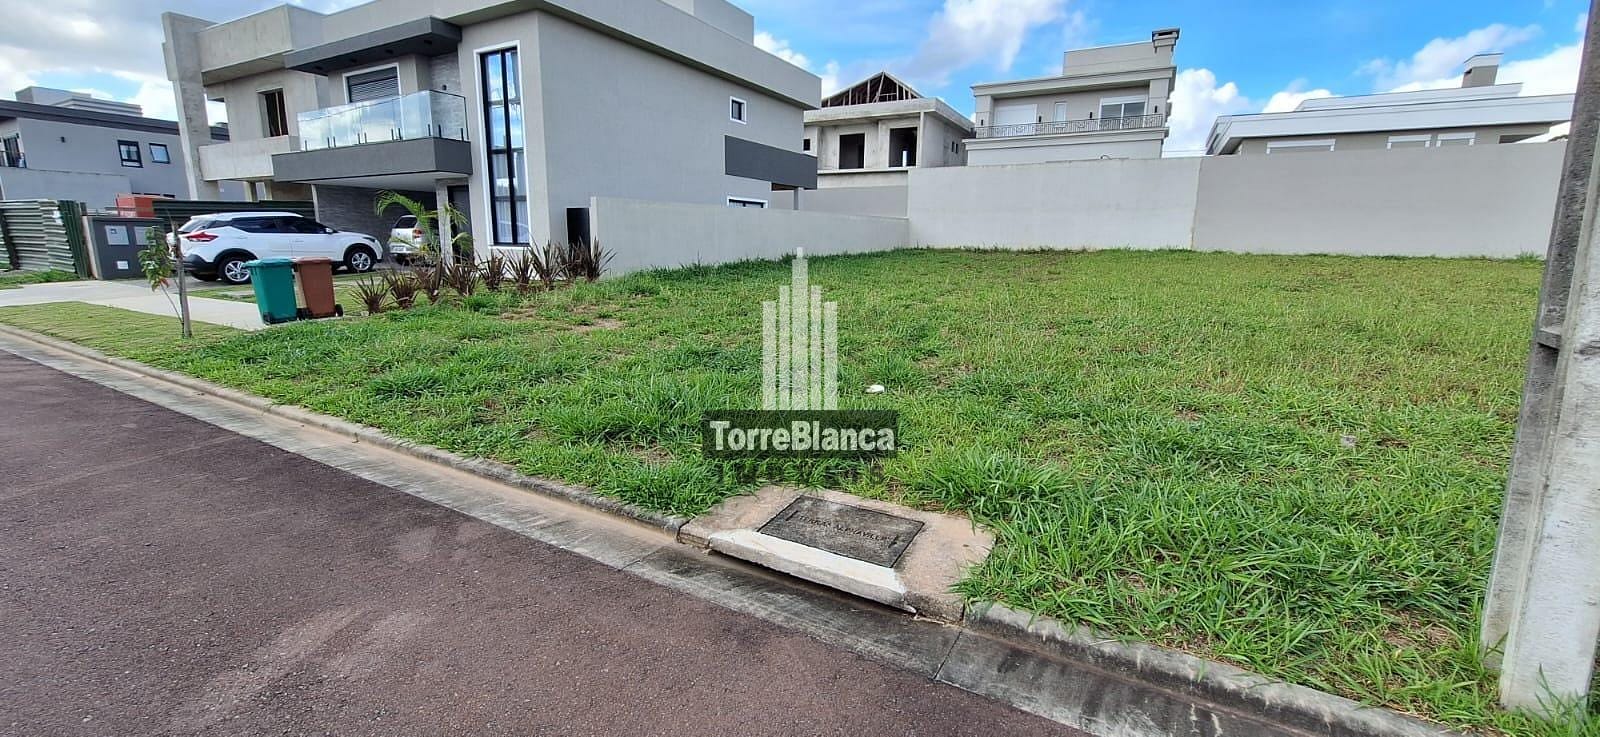 Terreno em Jardim Carvalho, Ponta Grossa/PR de 10m² à venda por R$ 229.000,00